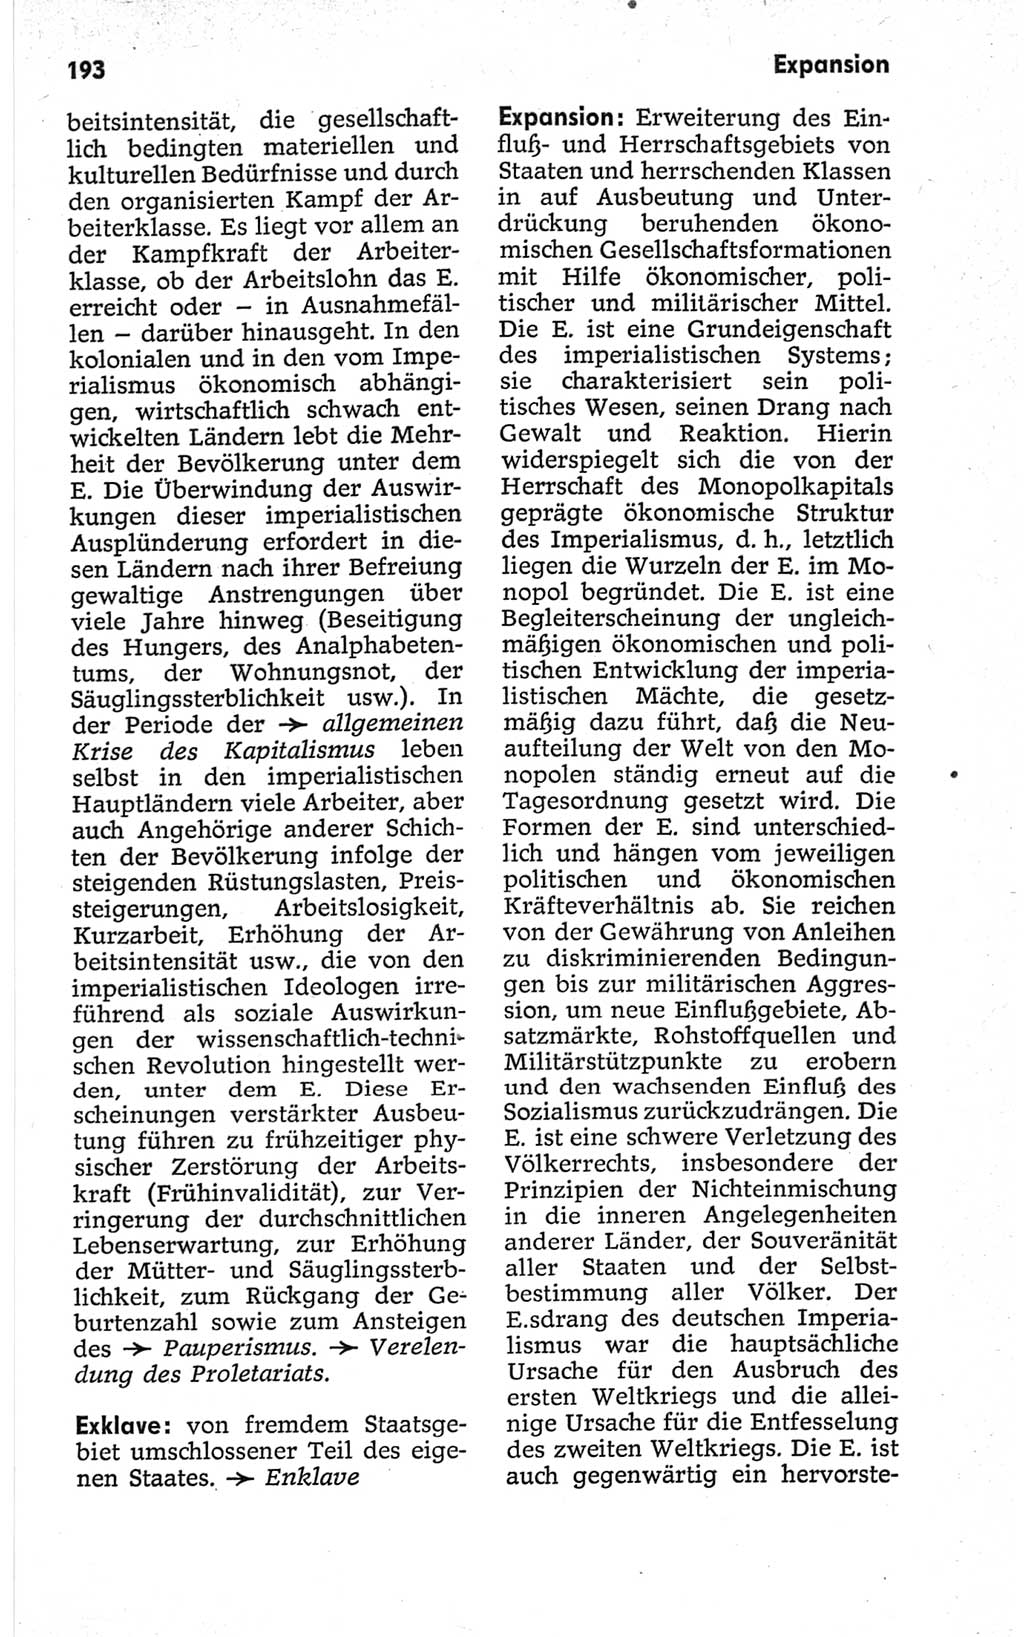 Kleines politisches Wörterbuch [Deutsche Demokratische Republik (DDR)] 1967, Seite 193 (Kl. pol. Wb. DDR 1967, S. 193)